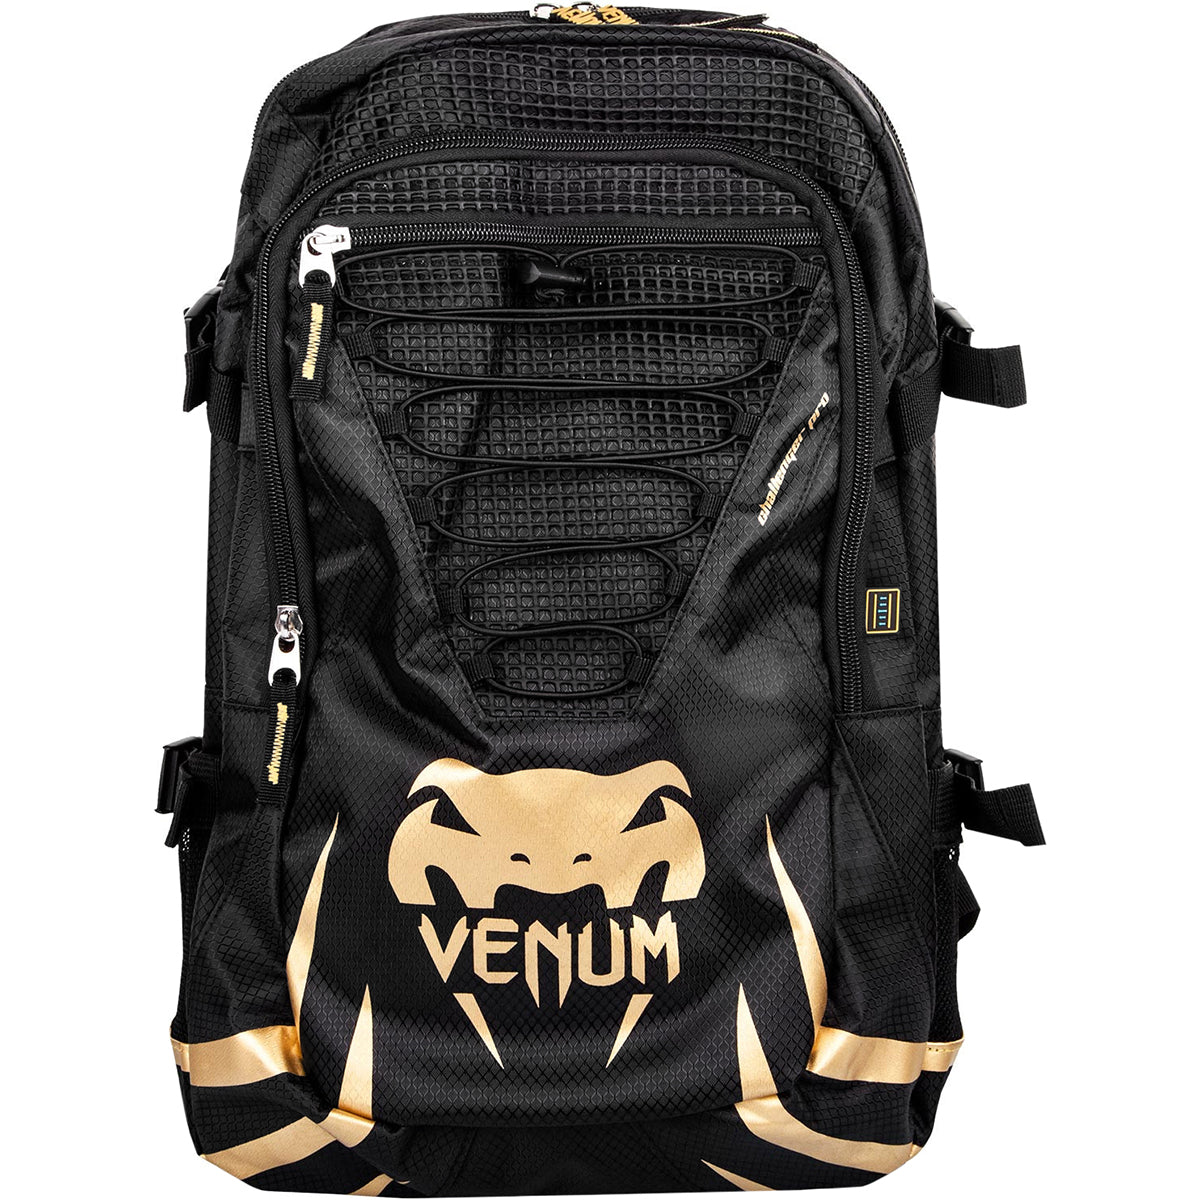 Venum Challenger Pro Backpack - Black/Gold Venum